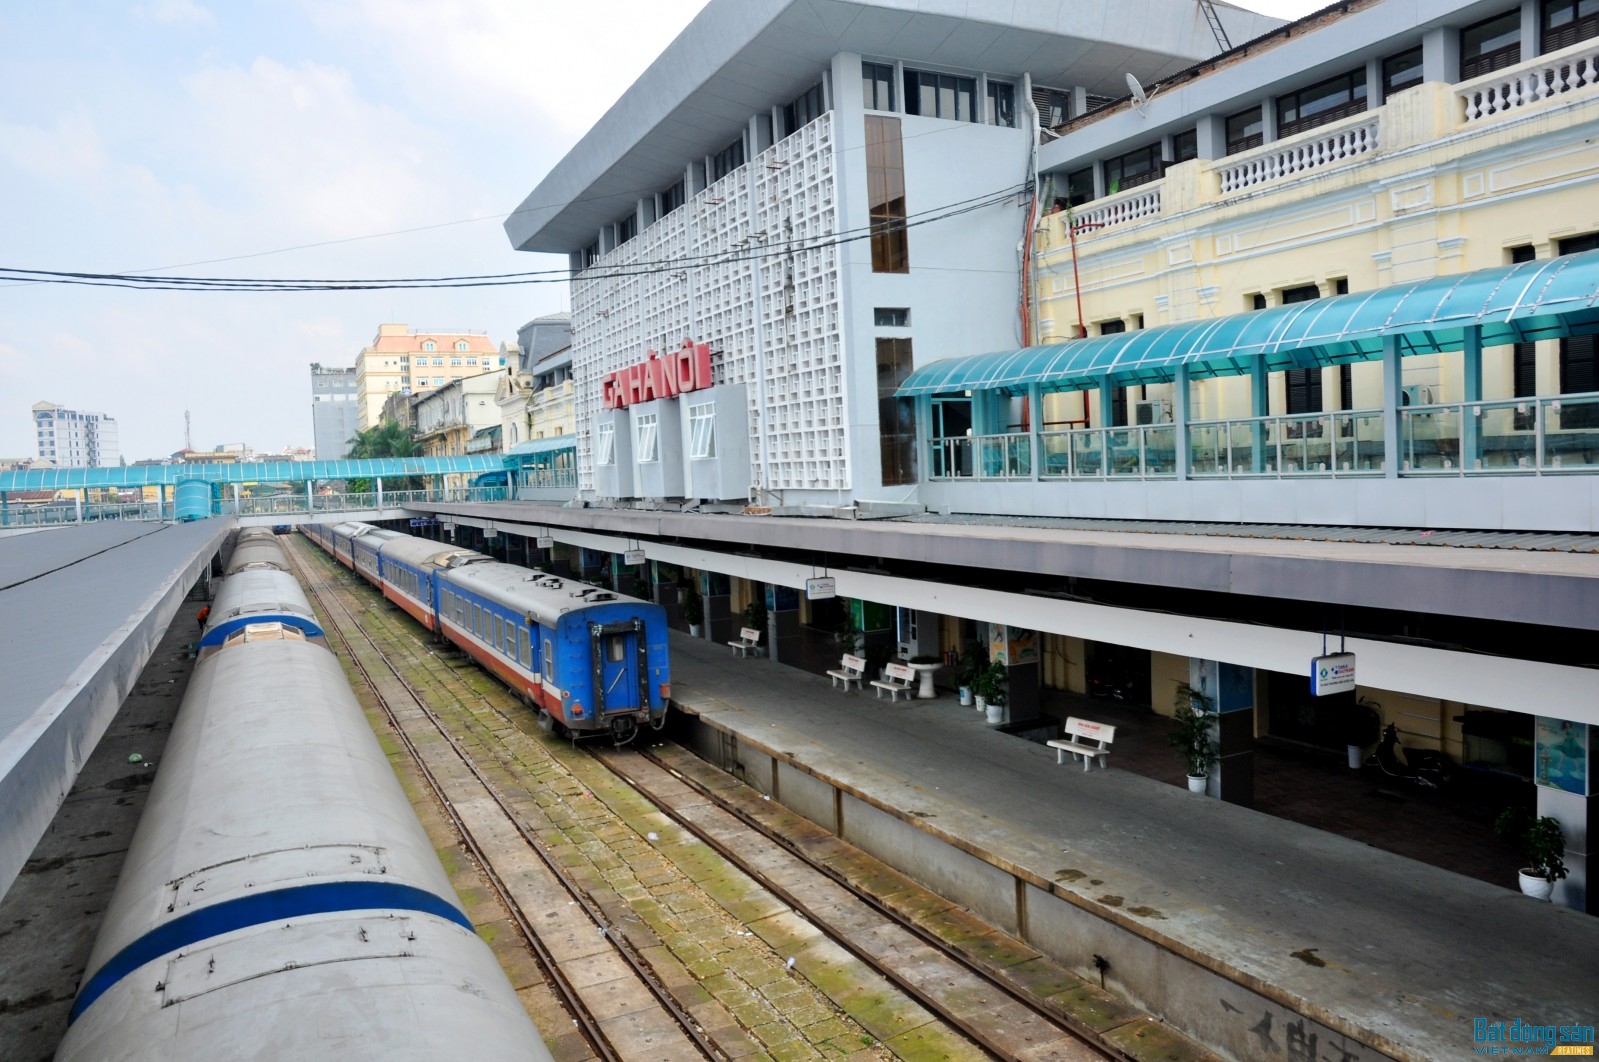 Hơn một thế kỷ qua, ga Hà Nội luôn là một đầu mối giao thông vận tải quan trọng của nước Việt Nam ta nói chung, của Thủ đô Hà Nội nói riêng. Ảnh: Kháng Trần